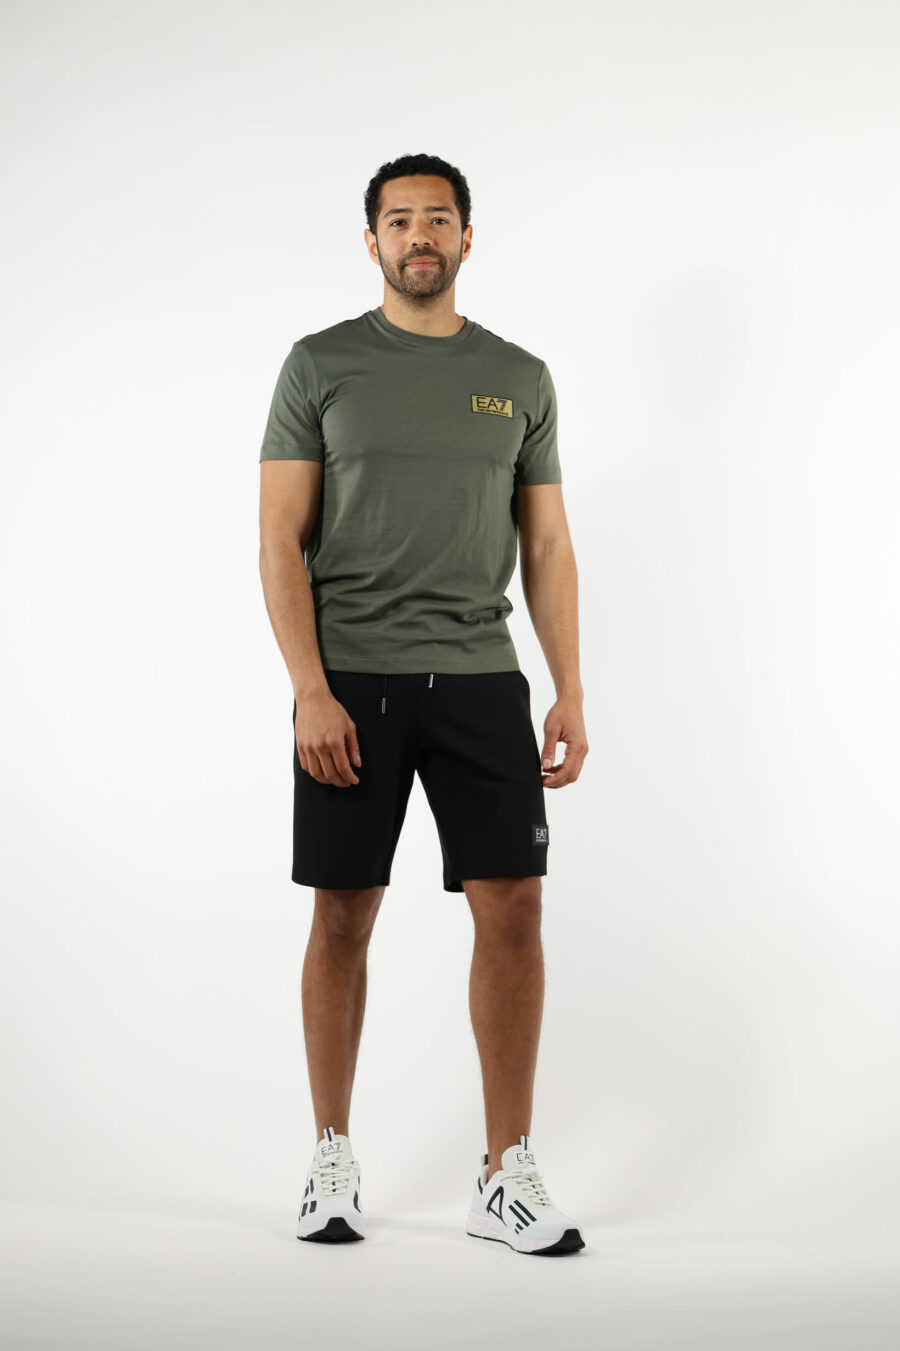 Grünes T-Shirt mit schwarzem Minilogo "lux identity" auf Goldplatte - 110876